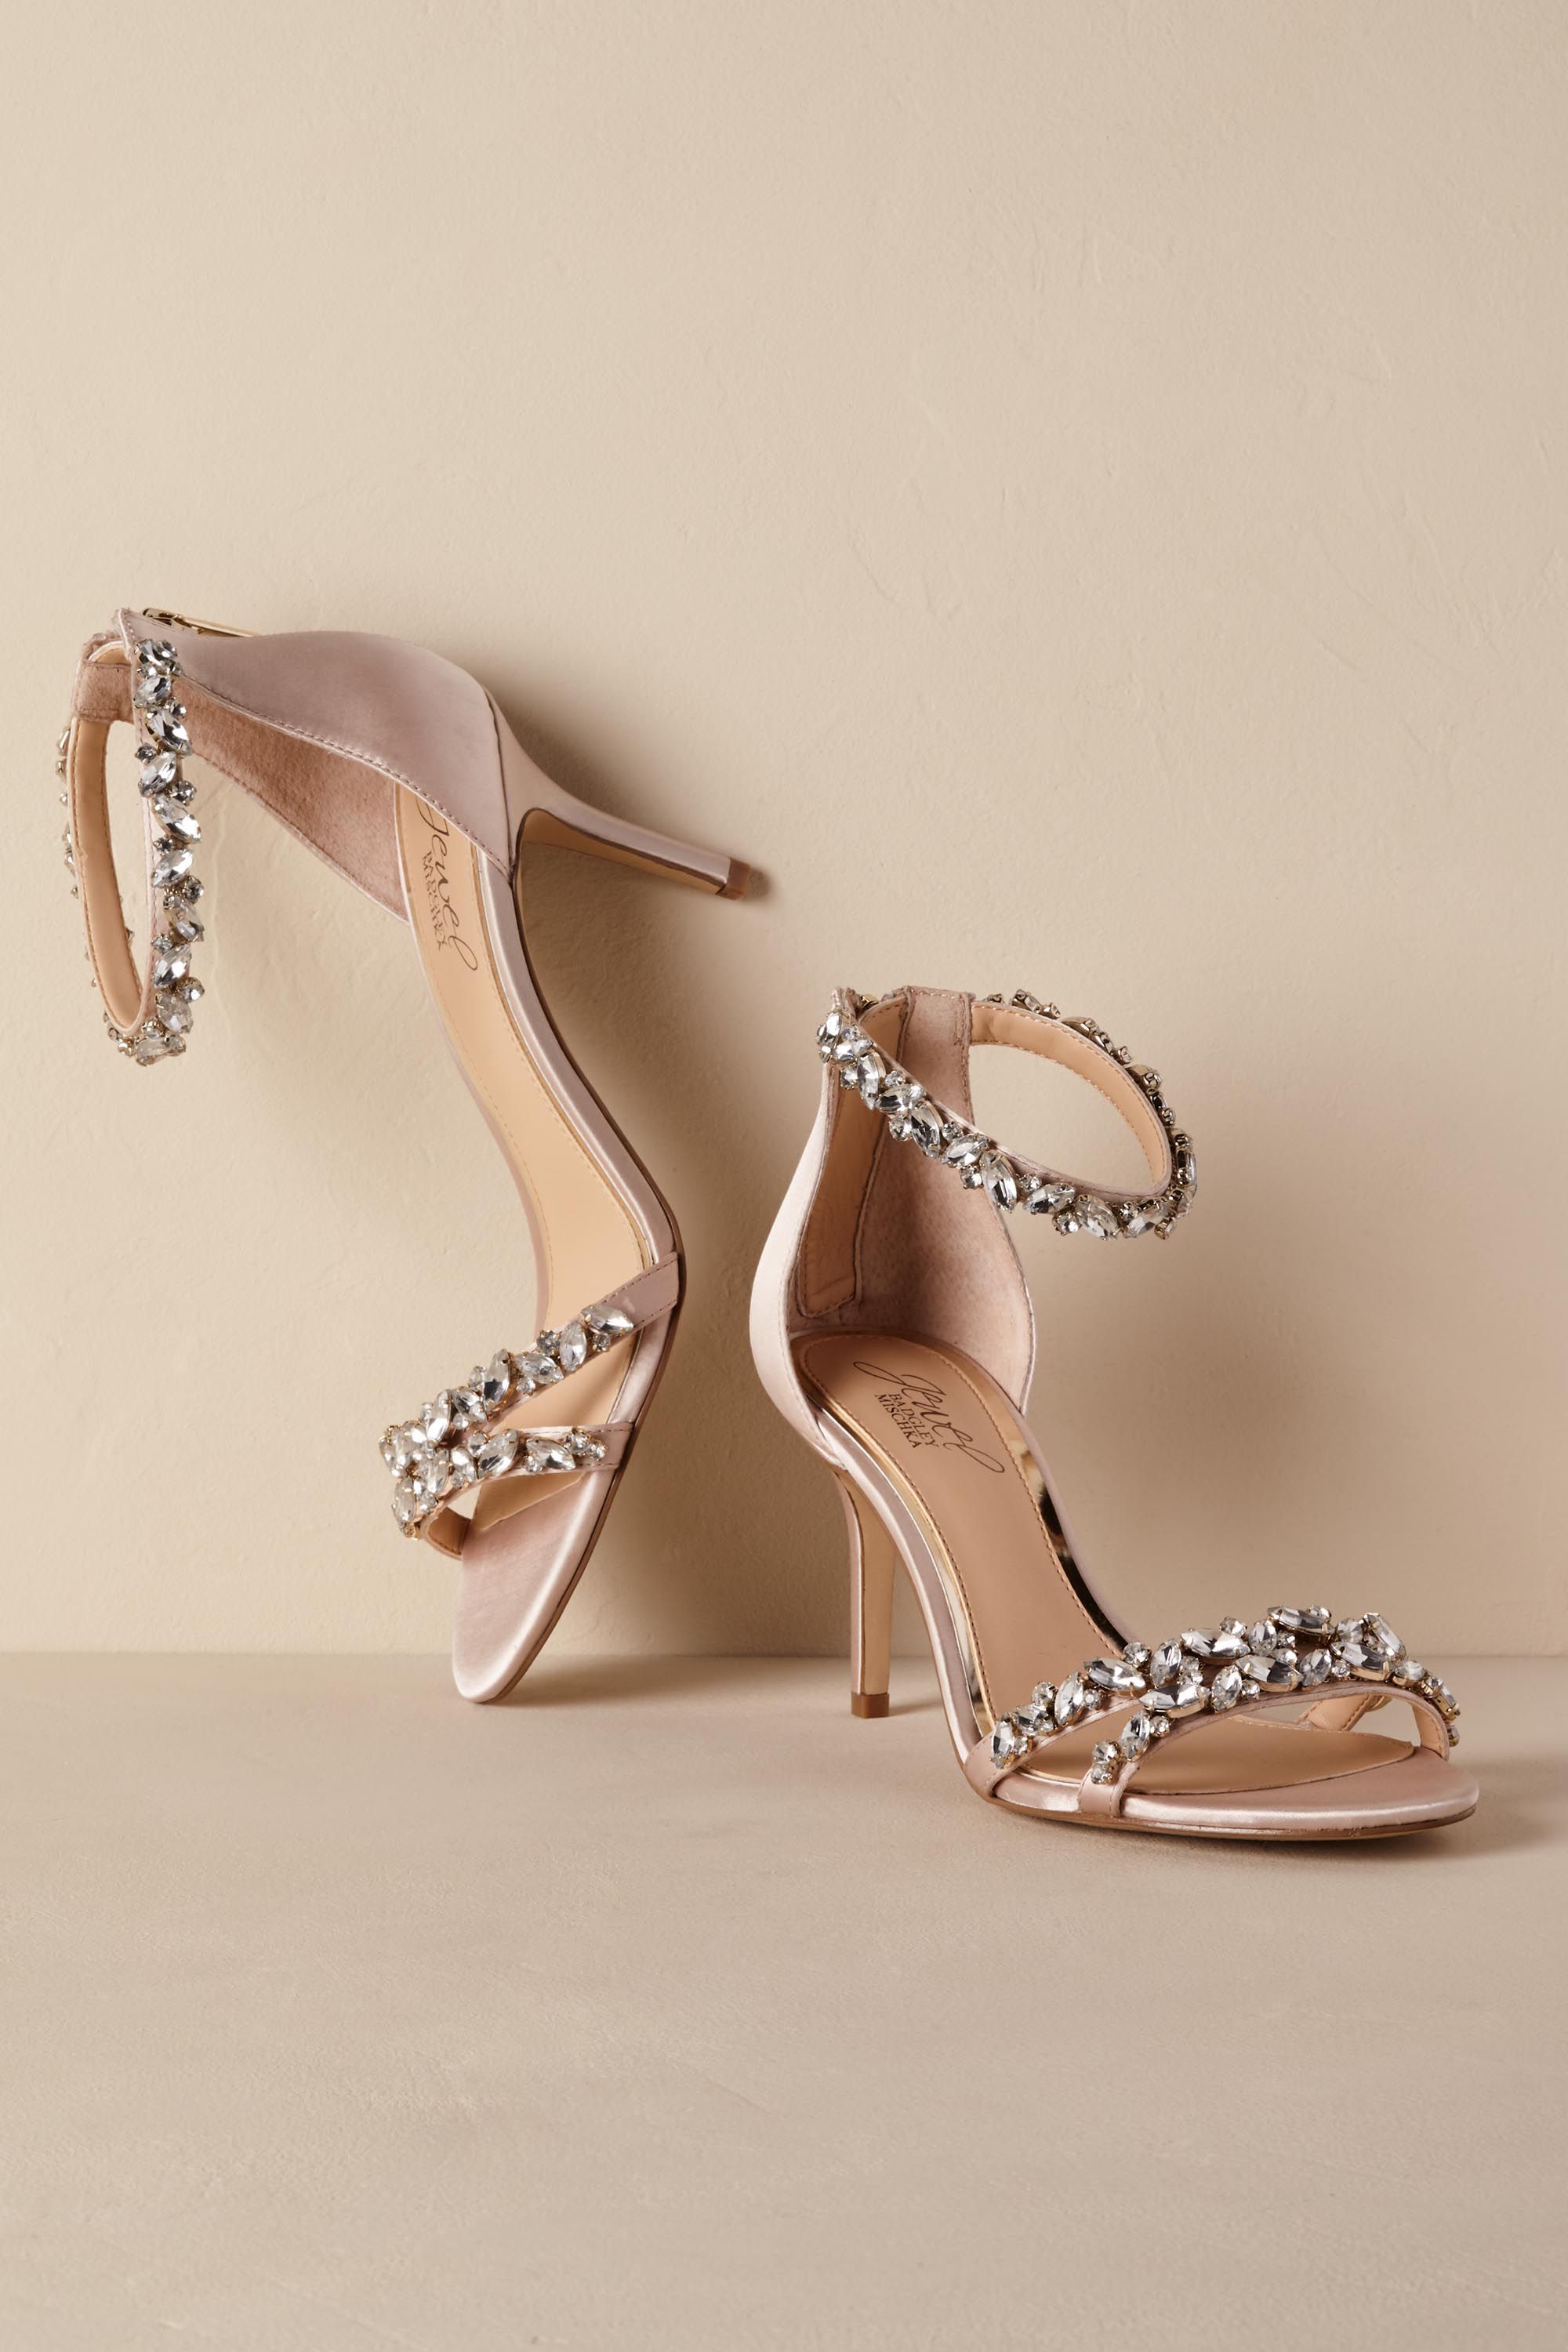 blush bridesmaid shoes